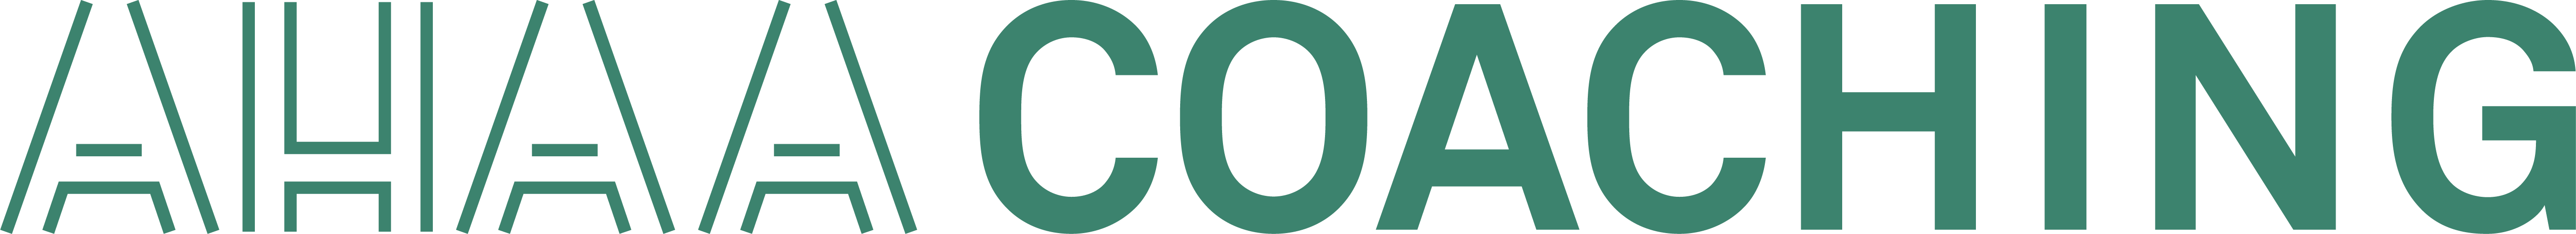 ahaa-coaching-logo